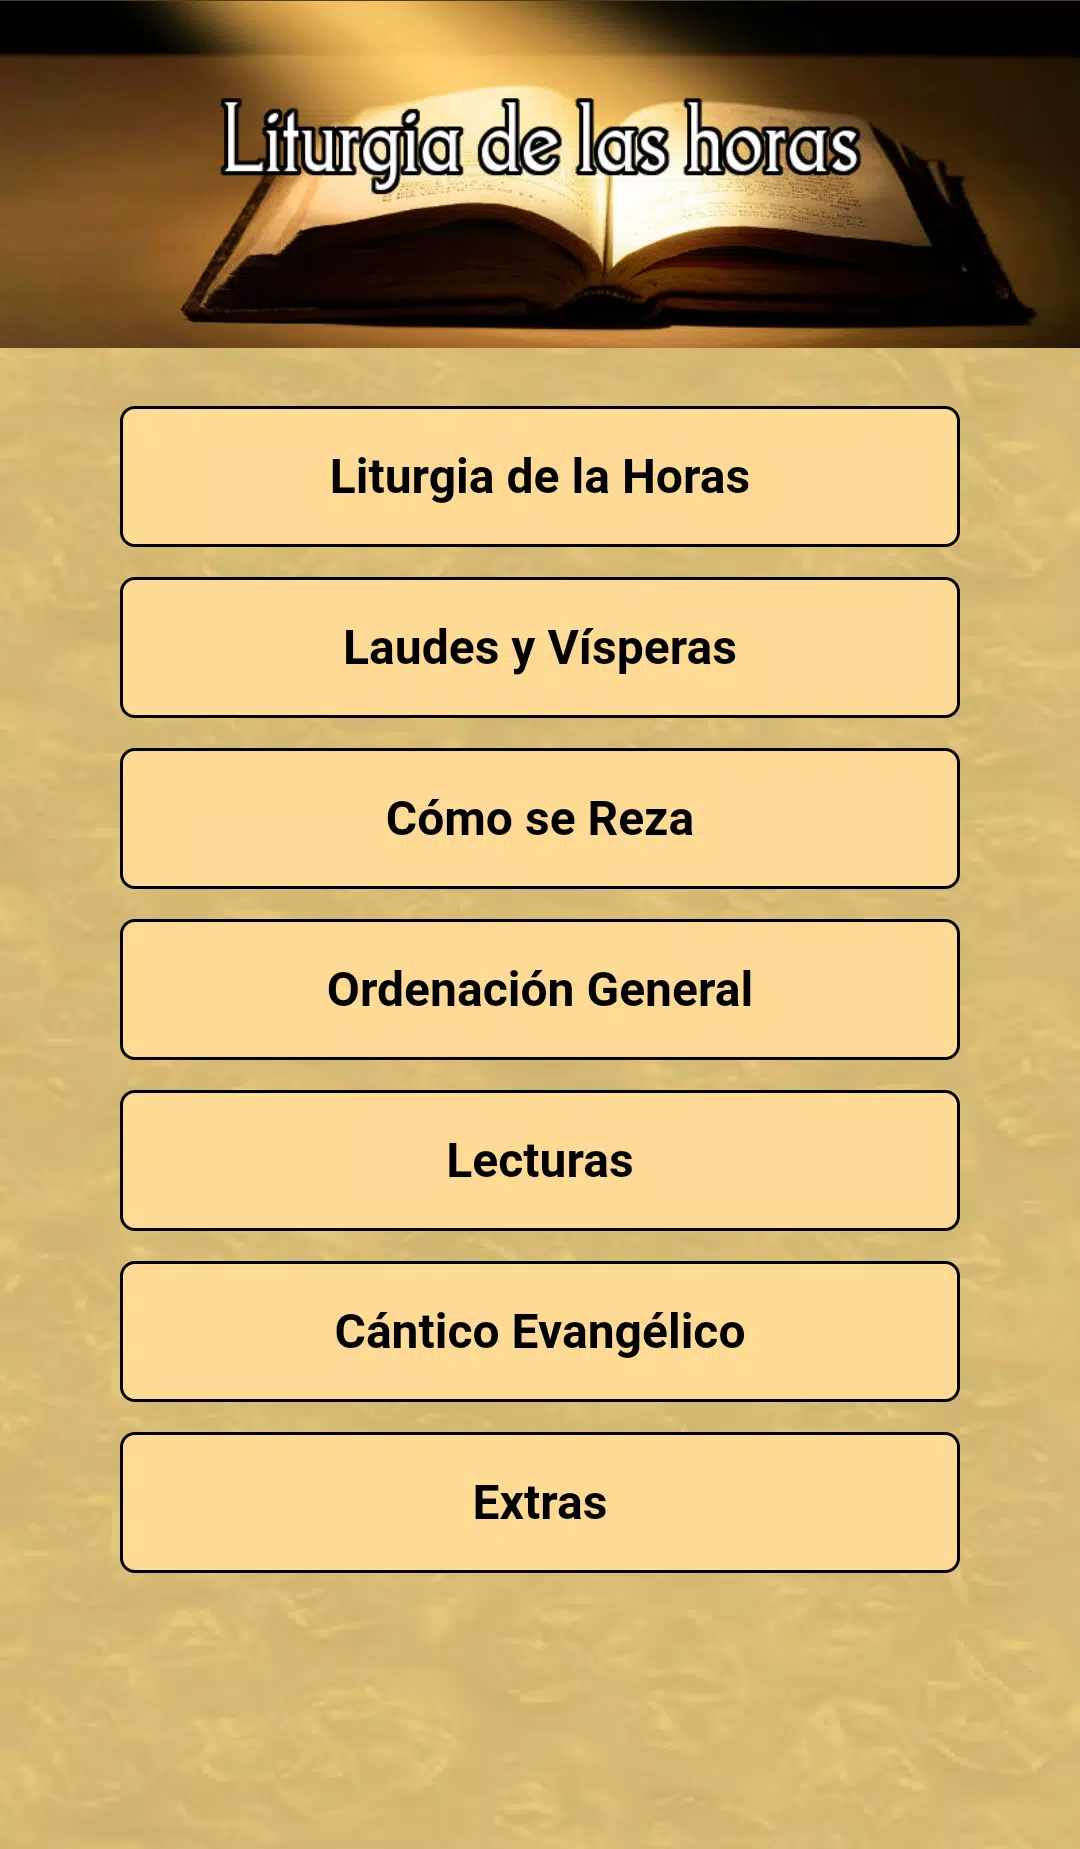 Liturgia de las horas - Laudes APK for Android Download